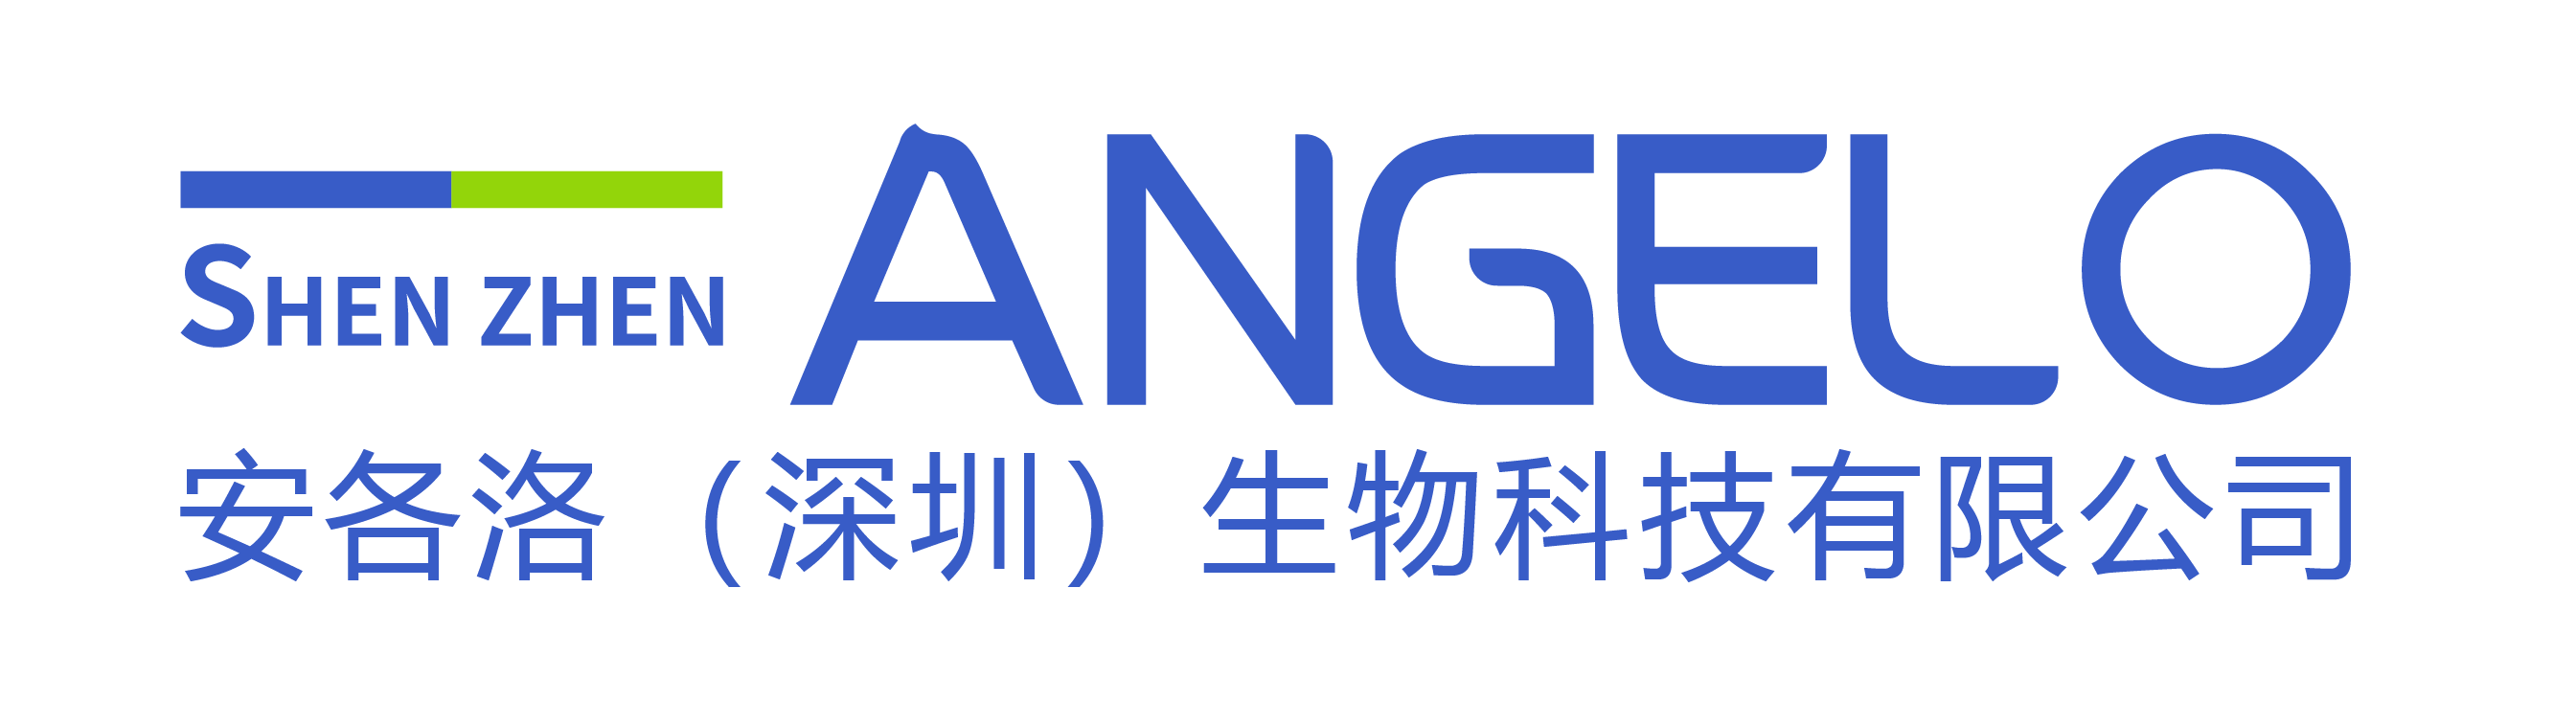 Angelo (Shenzhen) Biotechnology Co. Ltd